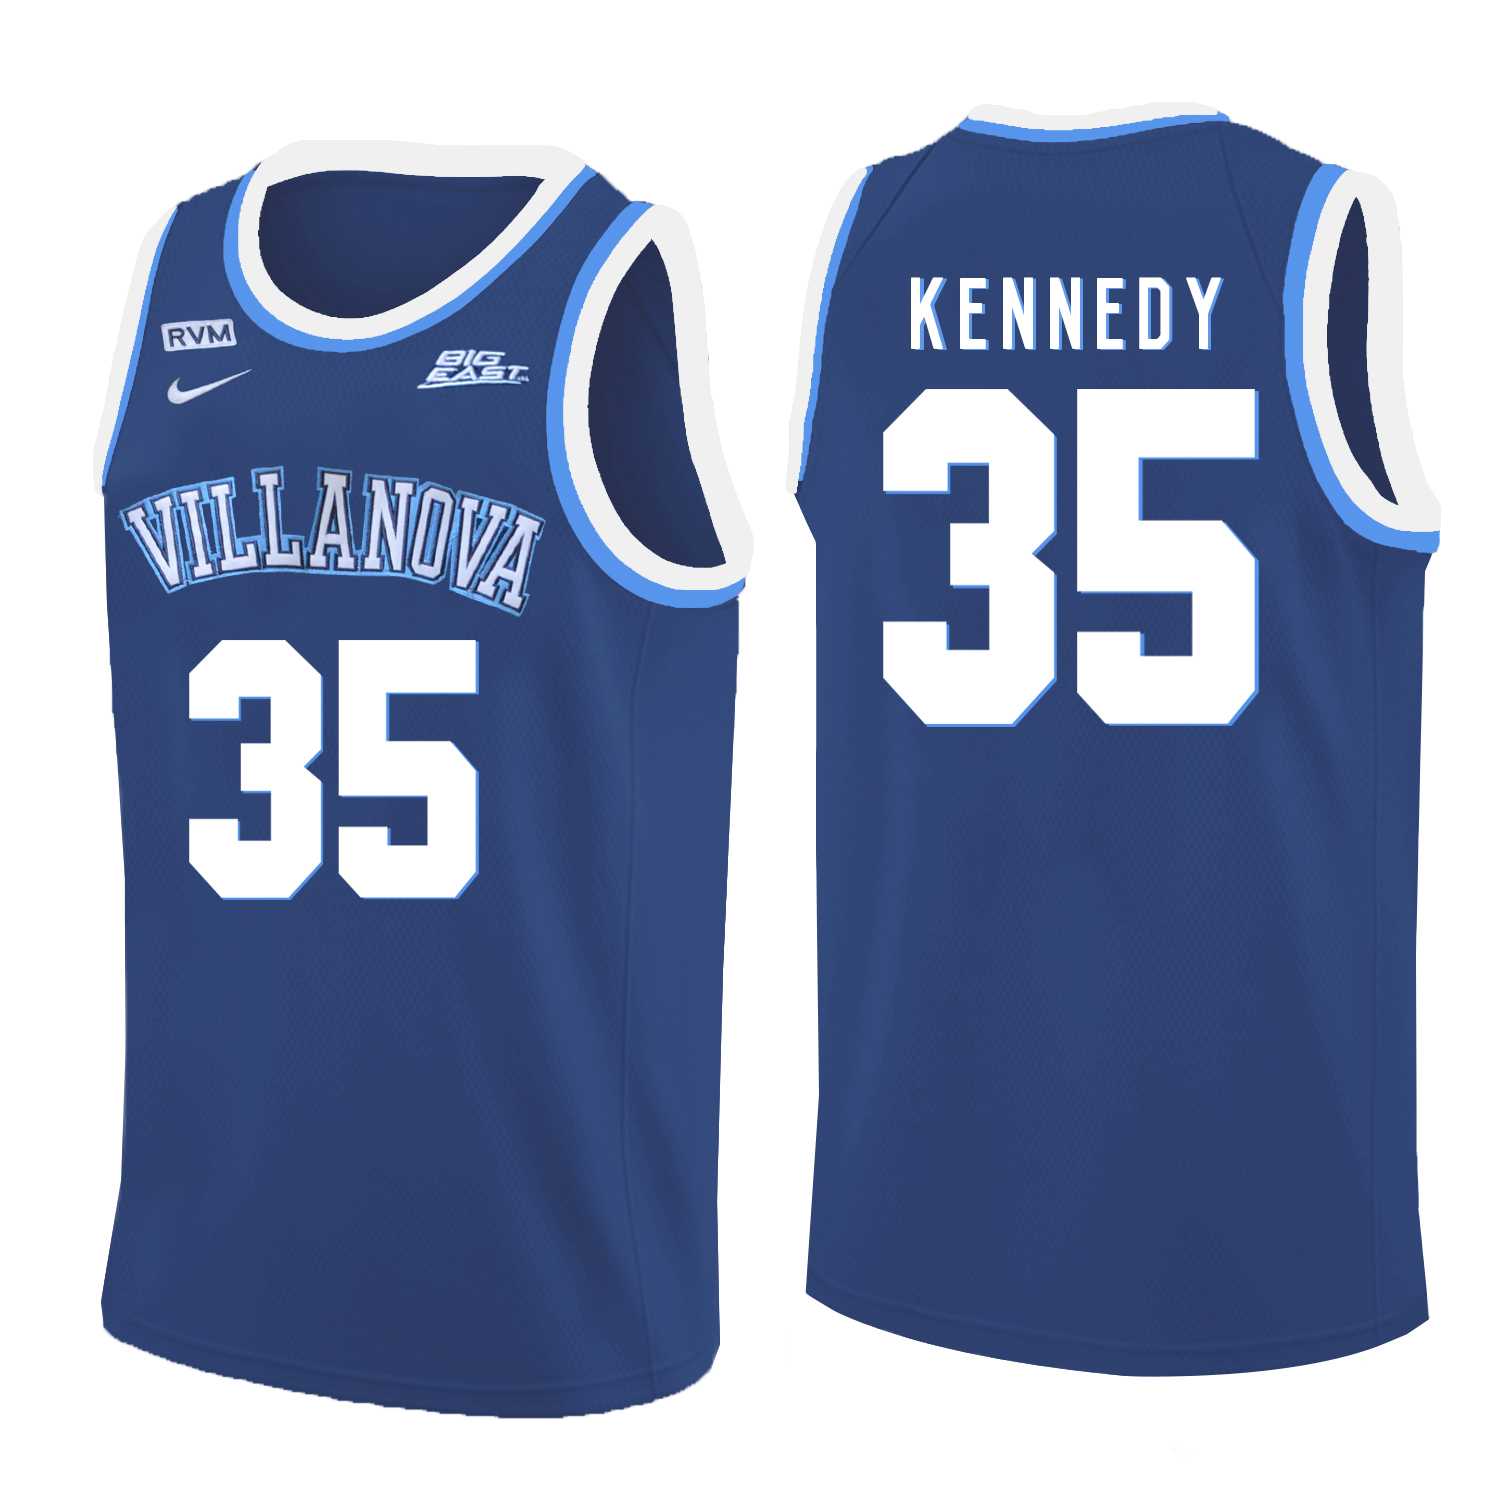 Villanova Wildcats 35 Matt Kennedy Blue College Basketball Jersey Dzhi